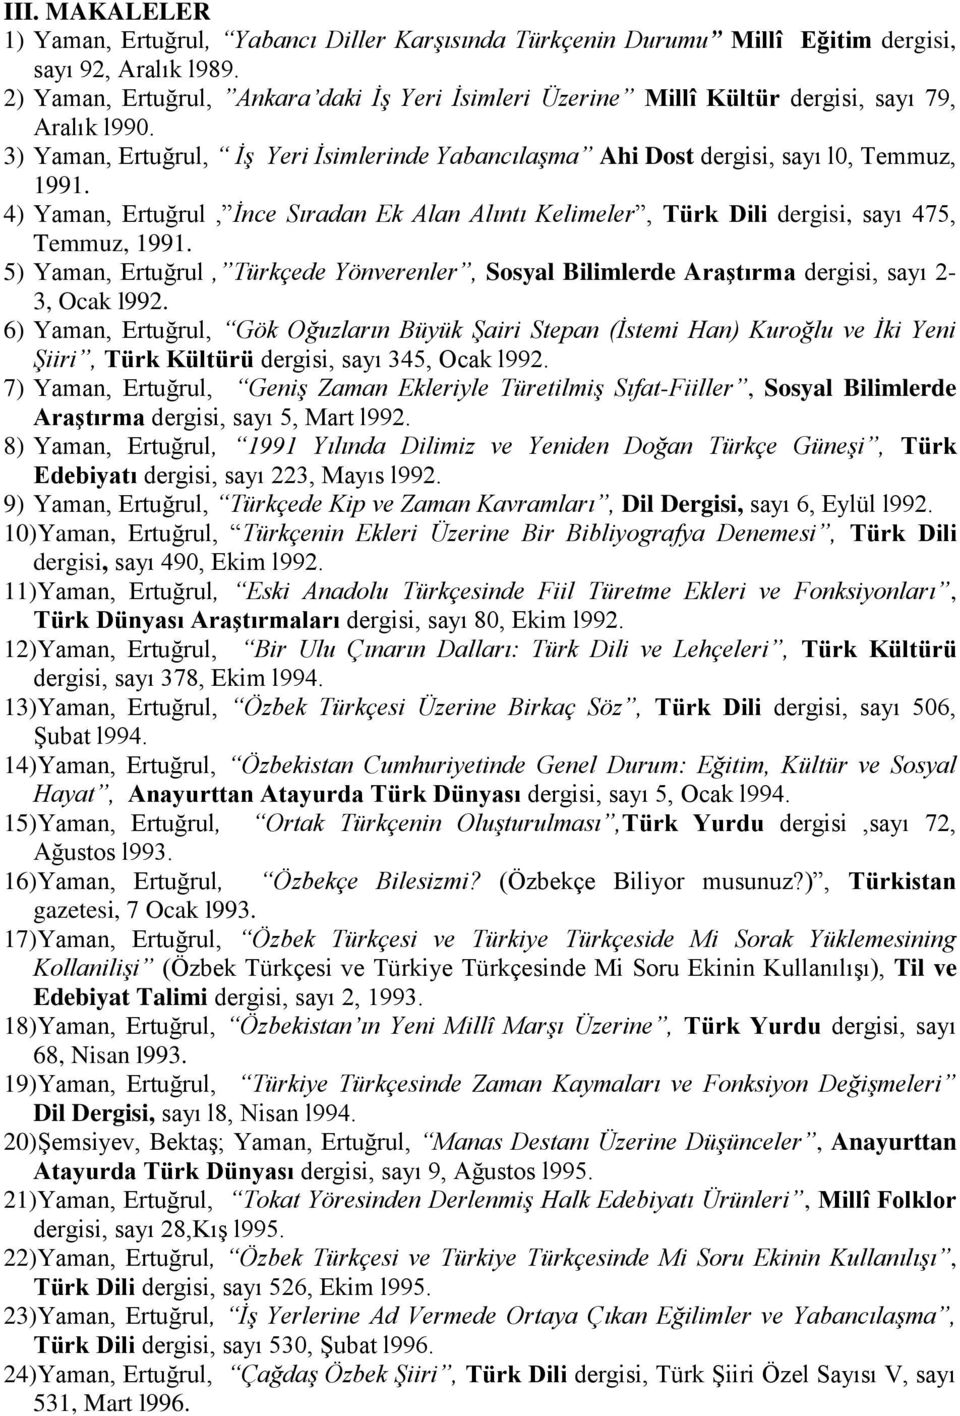 4) Yaman, Ertuğrul, İnce Sıradan Ek Alan Alıntı Kelimeler, Türk Dili dergisi, sayı 475, Temmuz, 1991.